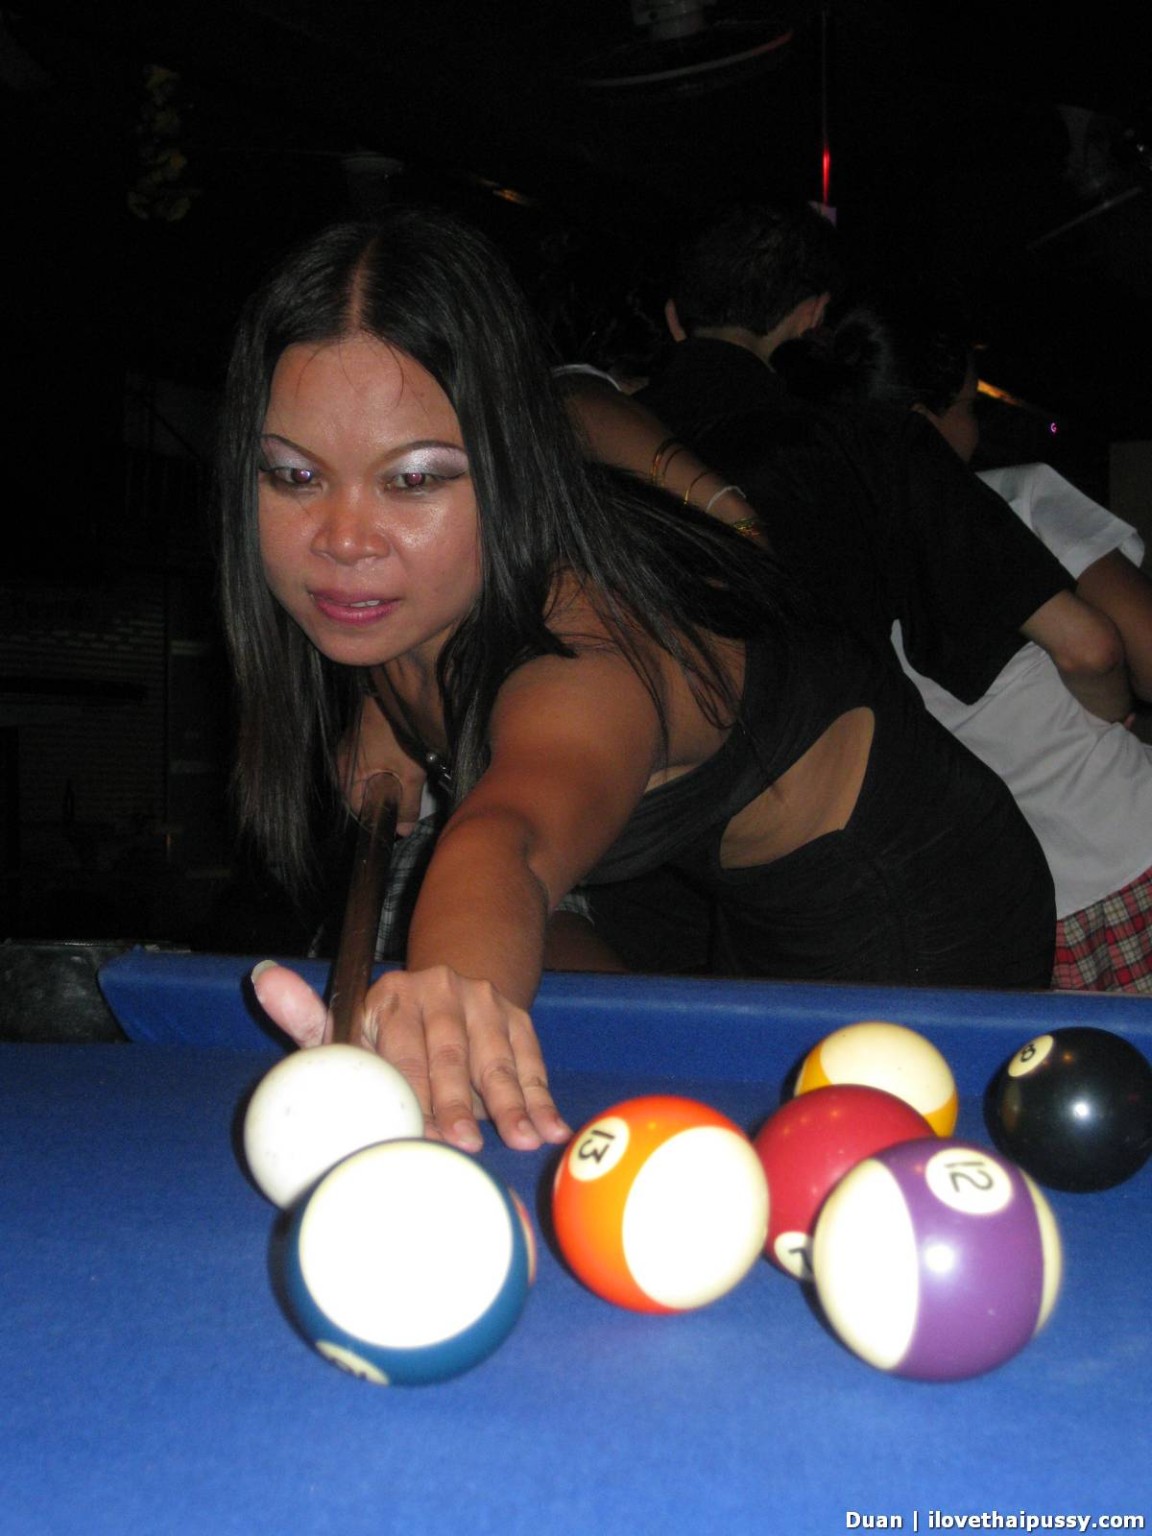 Thai Bargirl spielt Billard und saugt Touristenschwanz für Bargeld
 #69938920